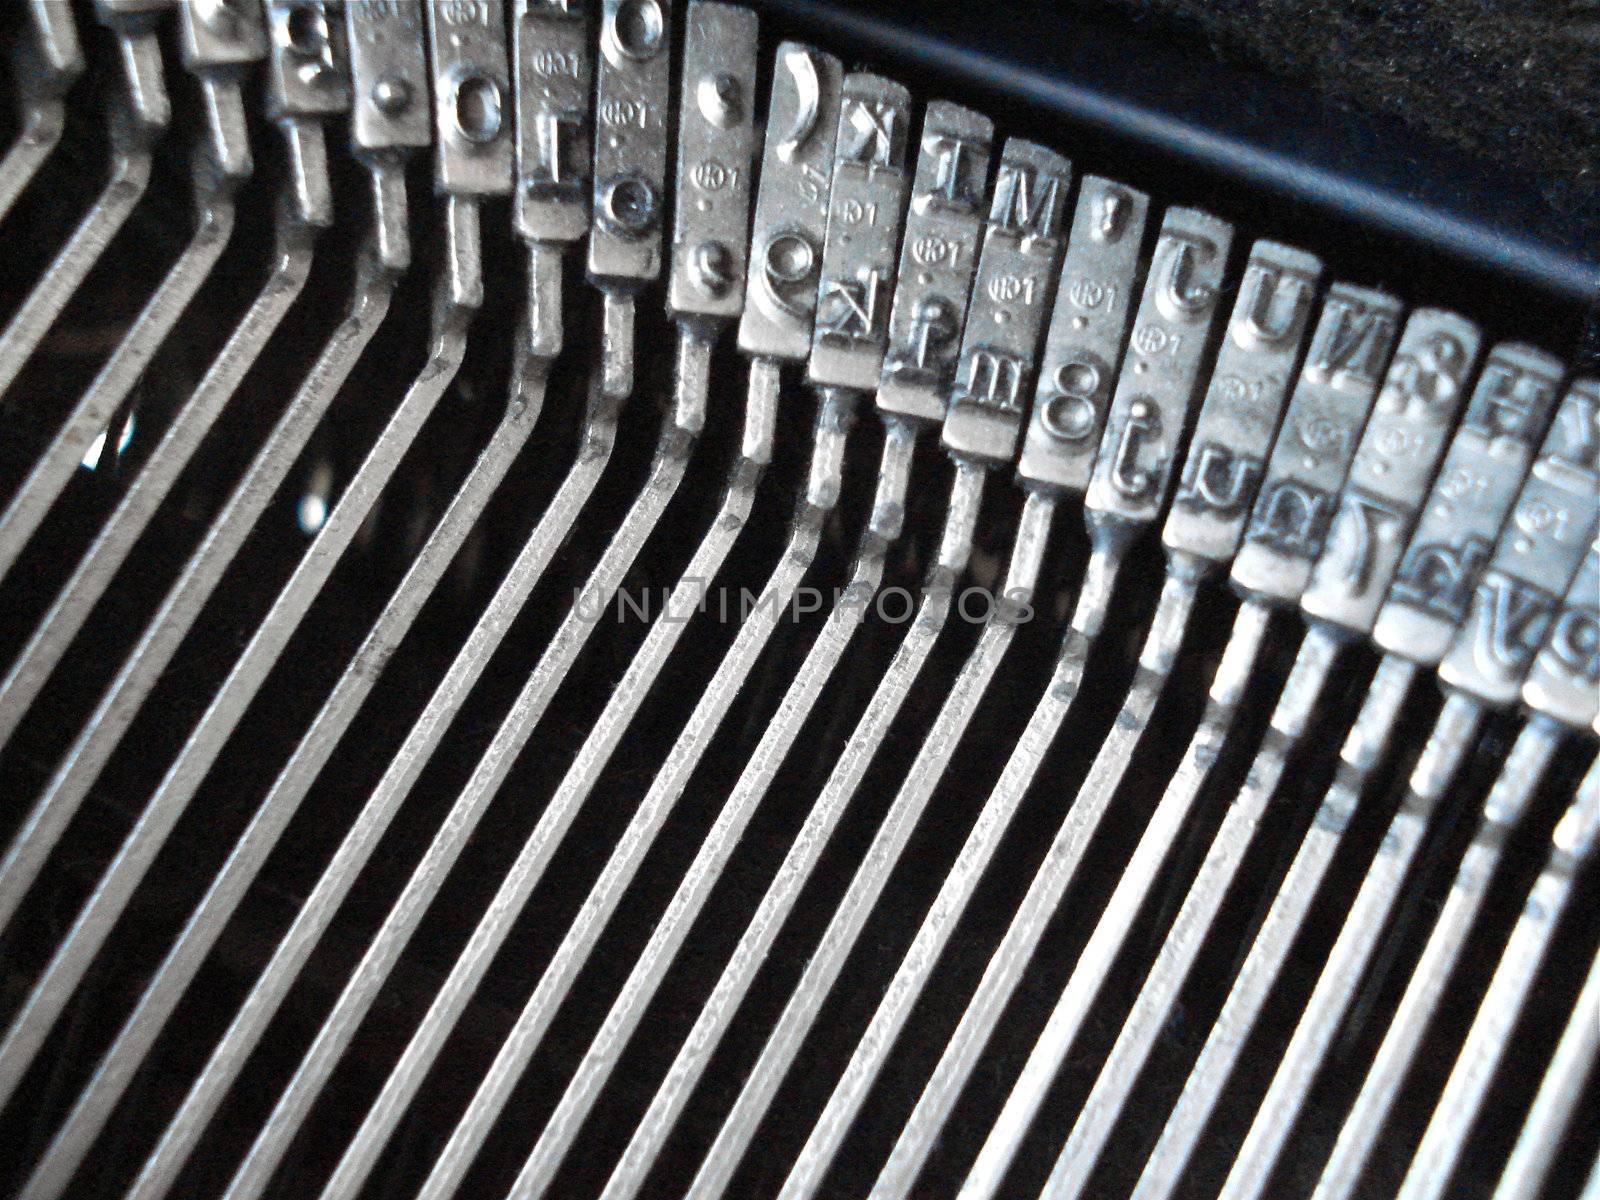 Antique Typewriter by gilmourbto2001